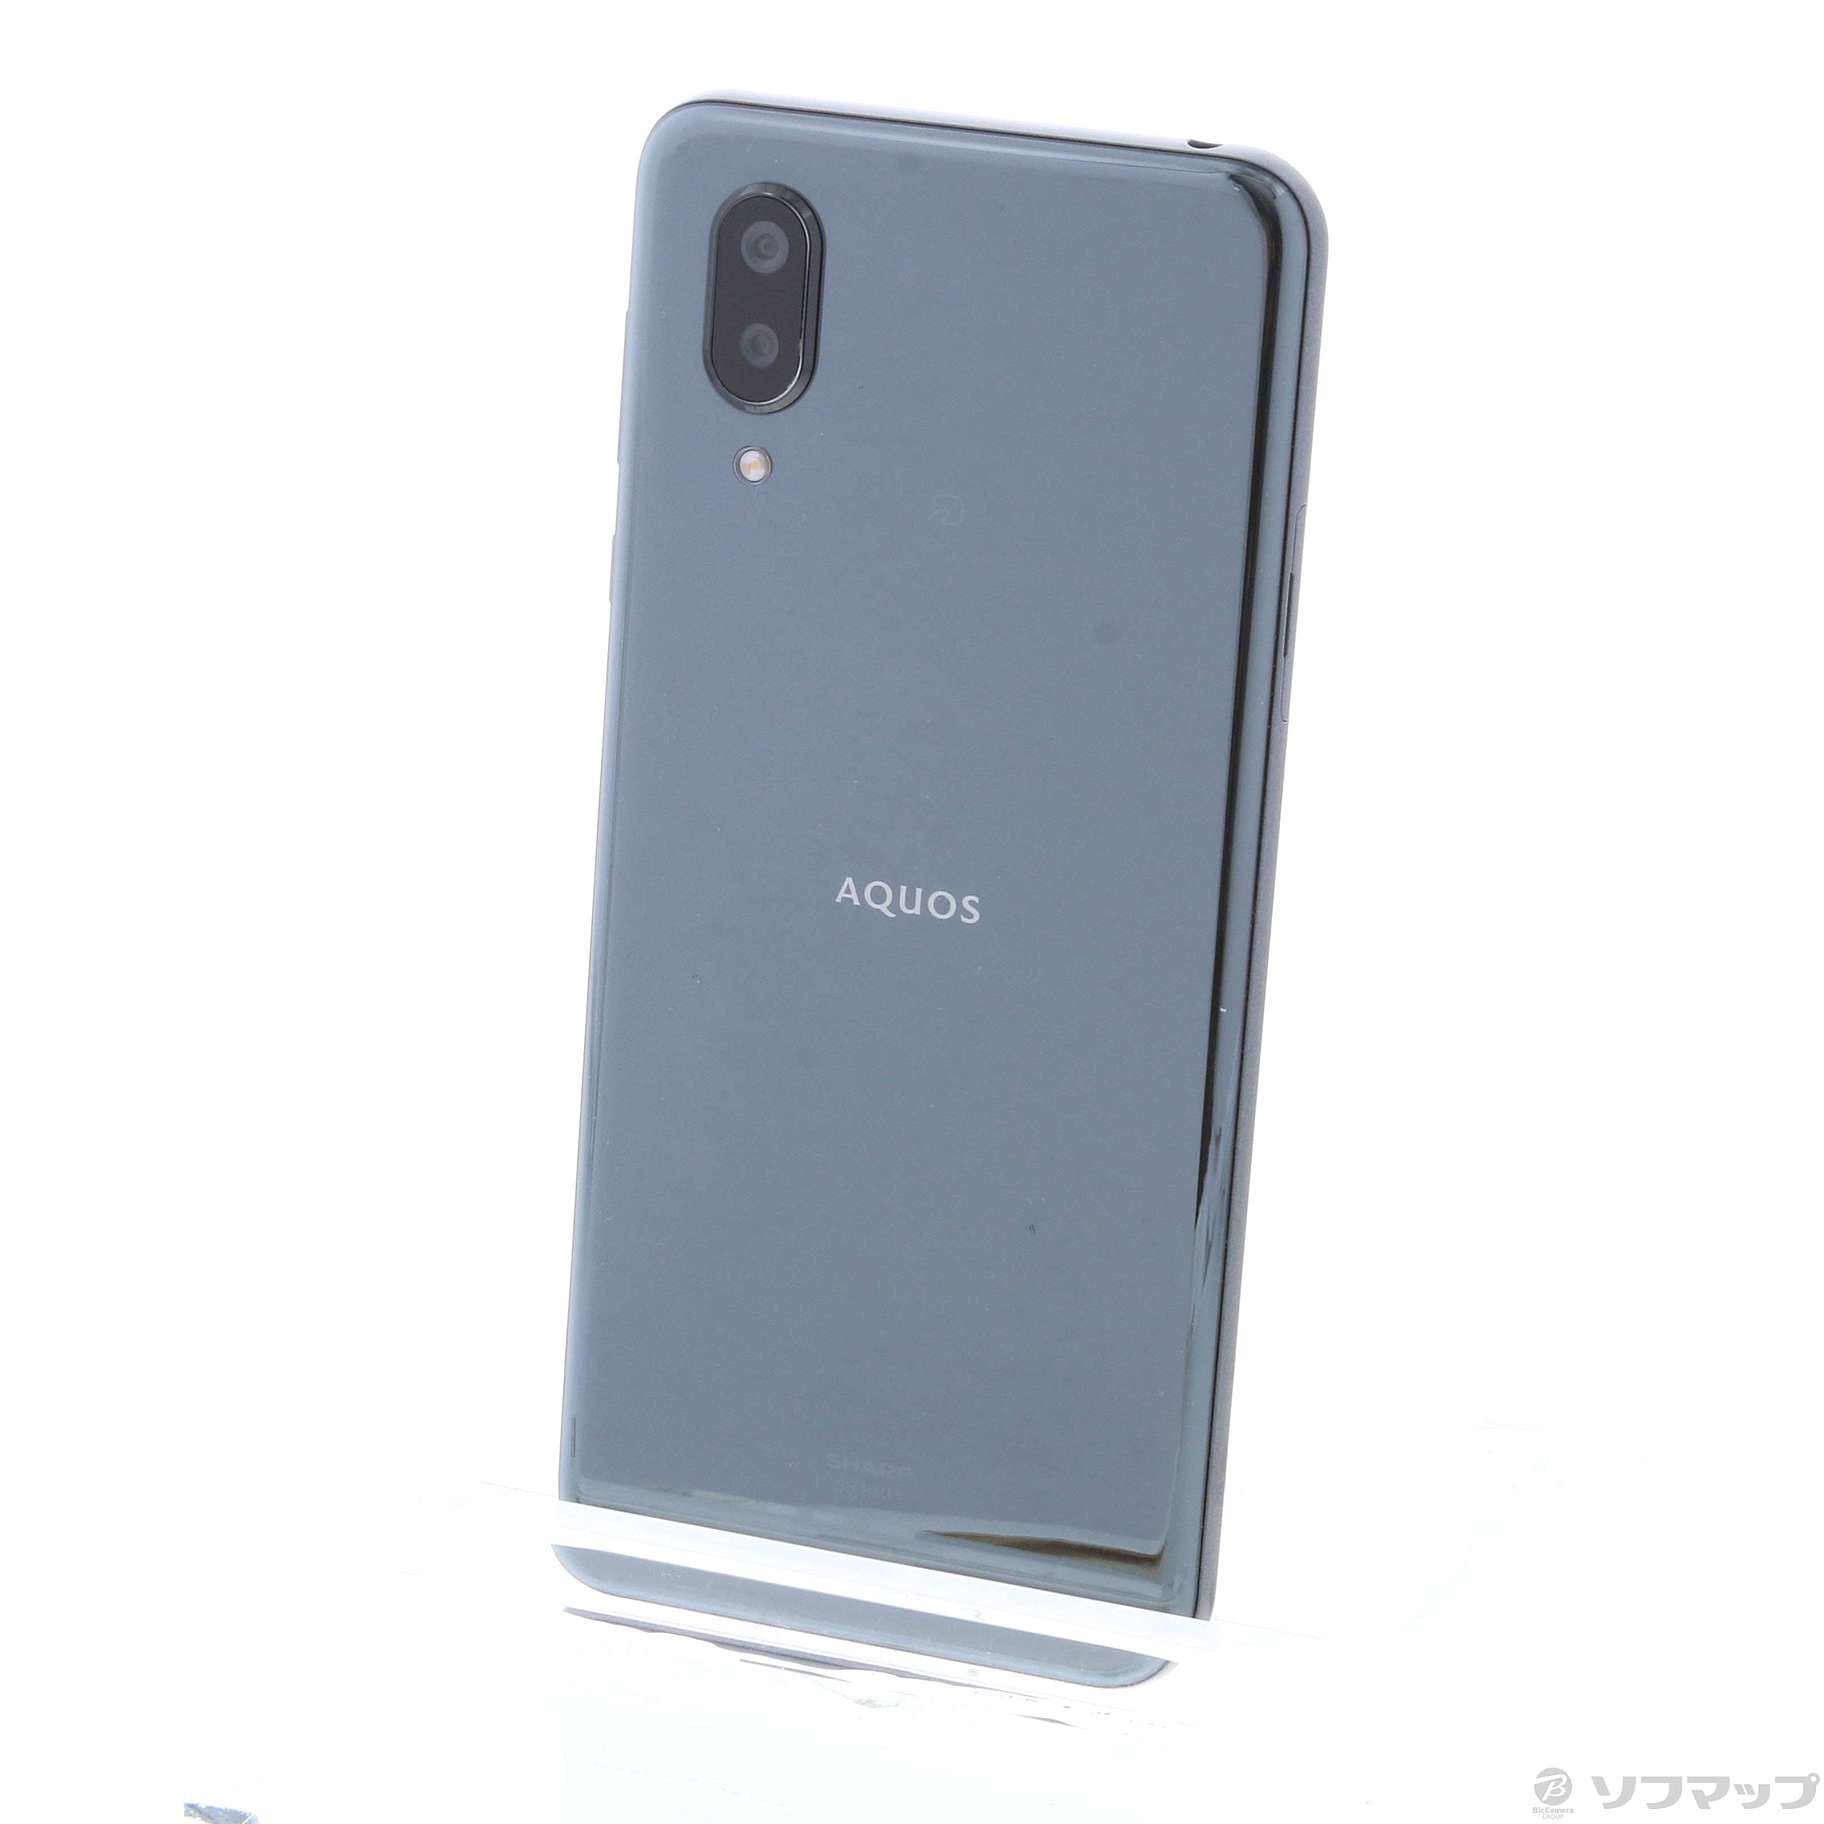 中古】AQUOS sense3 plus 64GB ブラック SH-RM11 SIMフリー